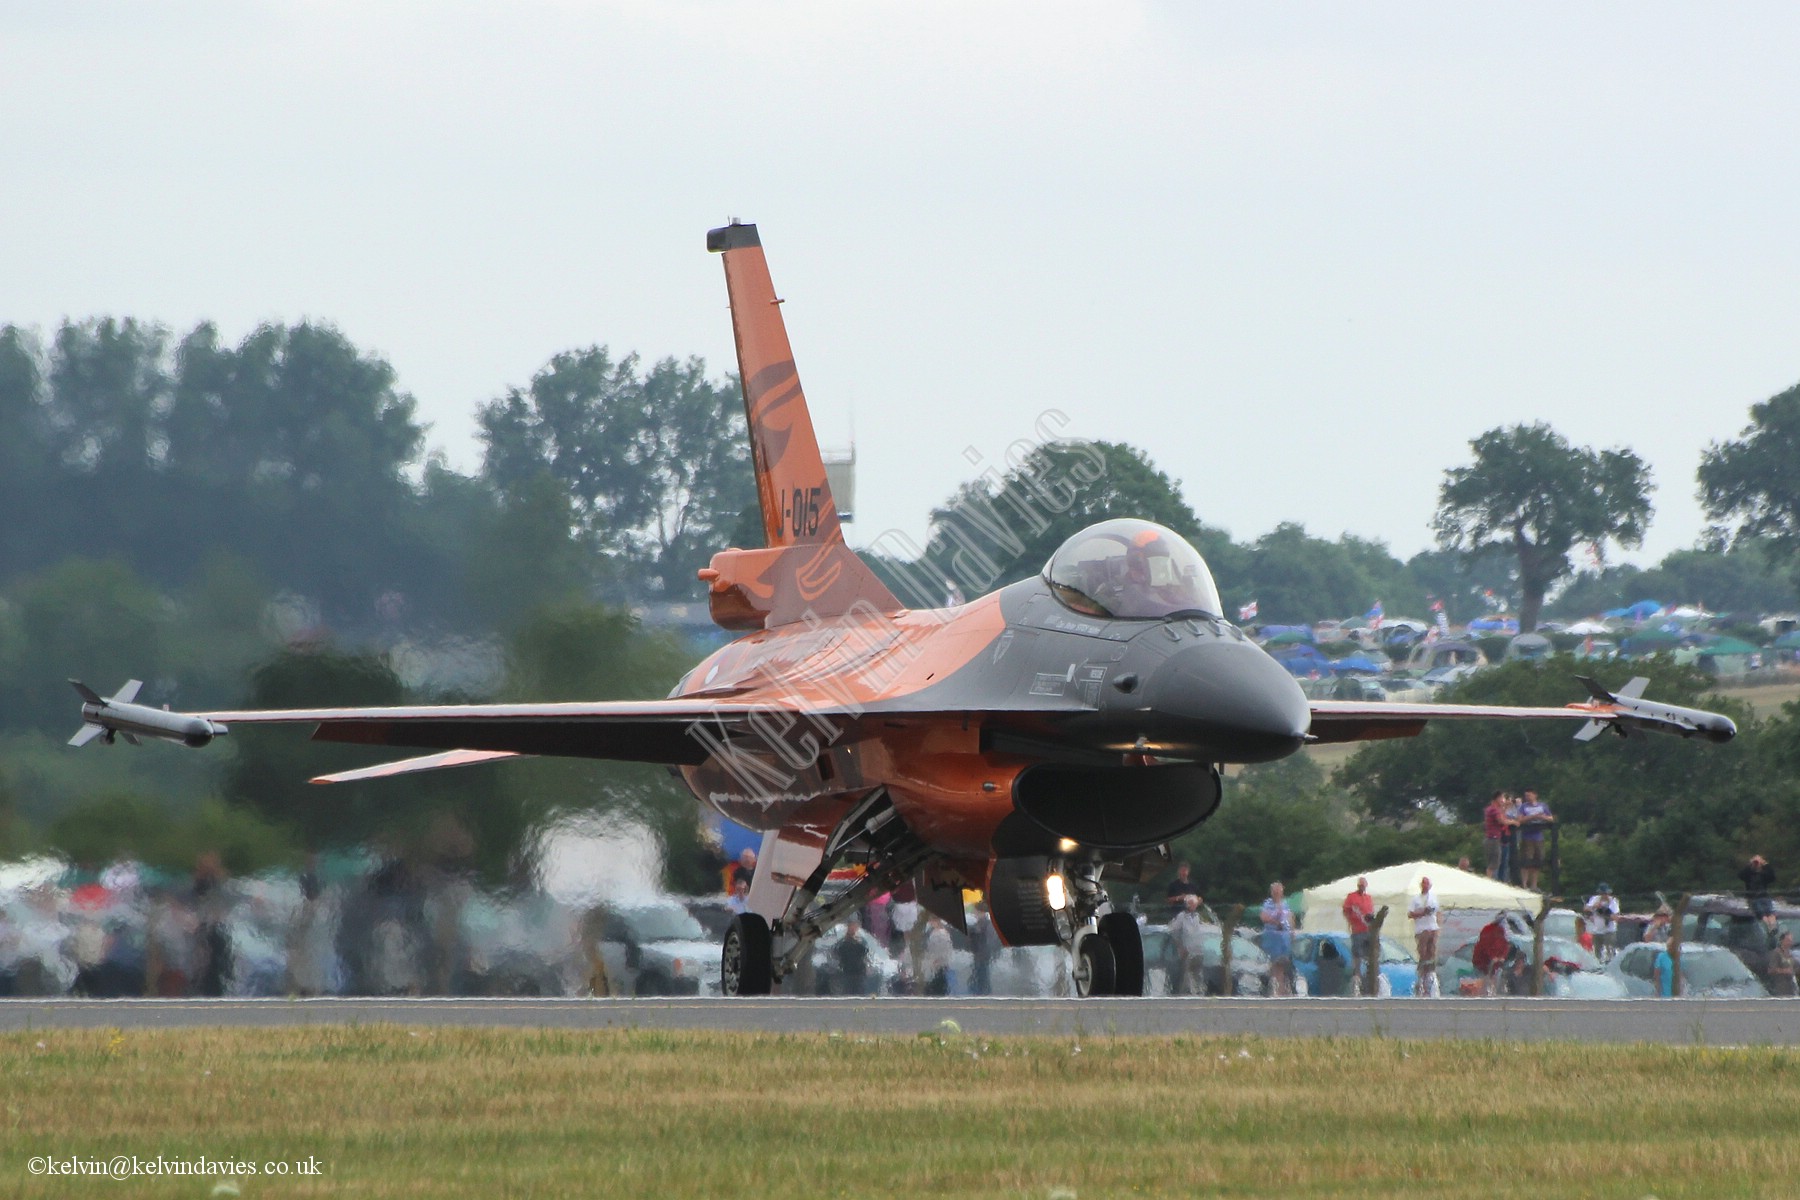 Dutch Air Force F16